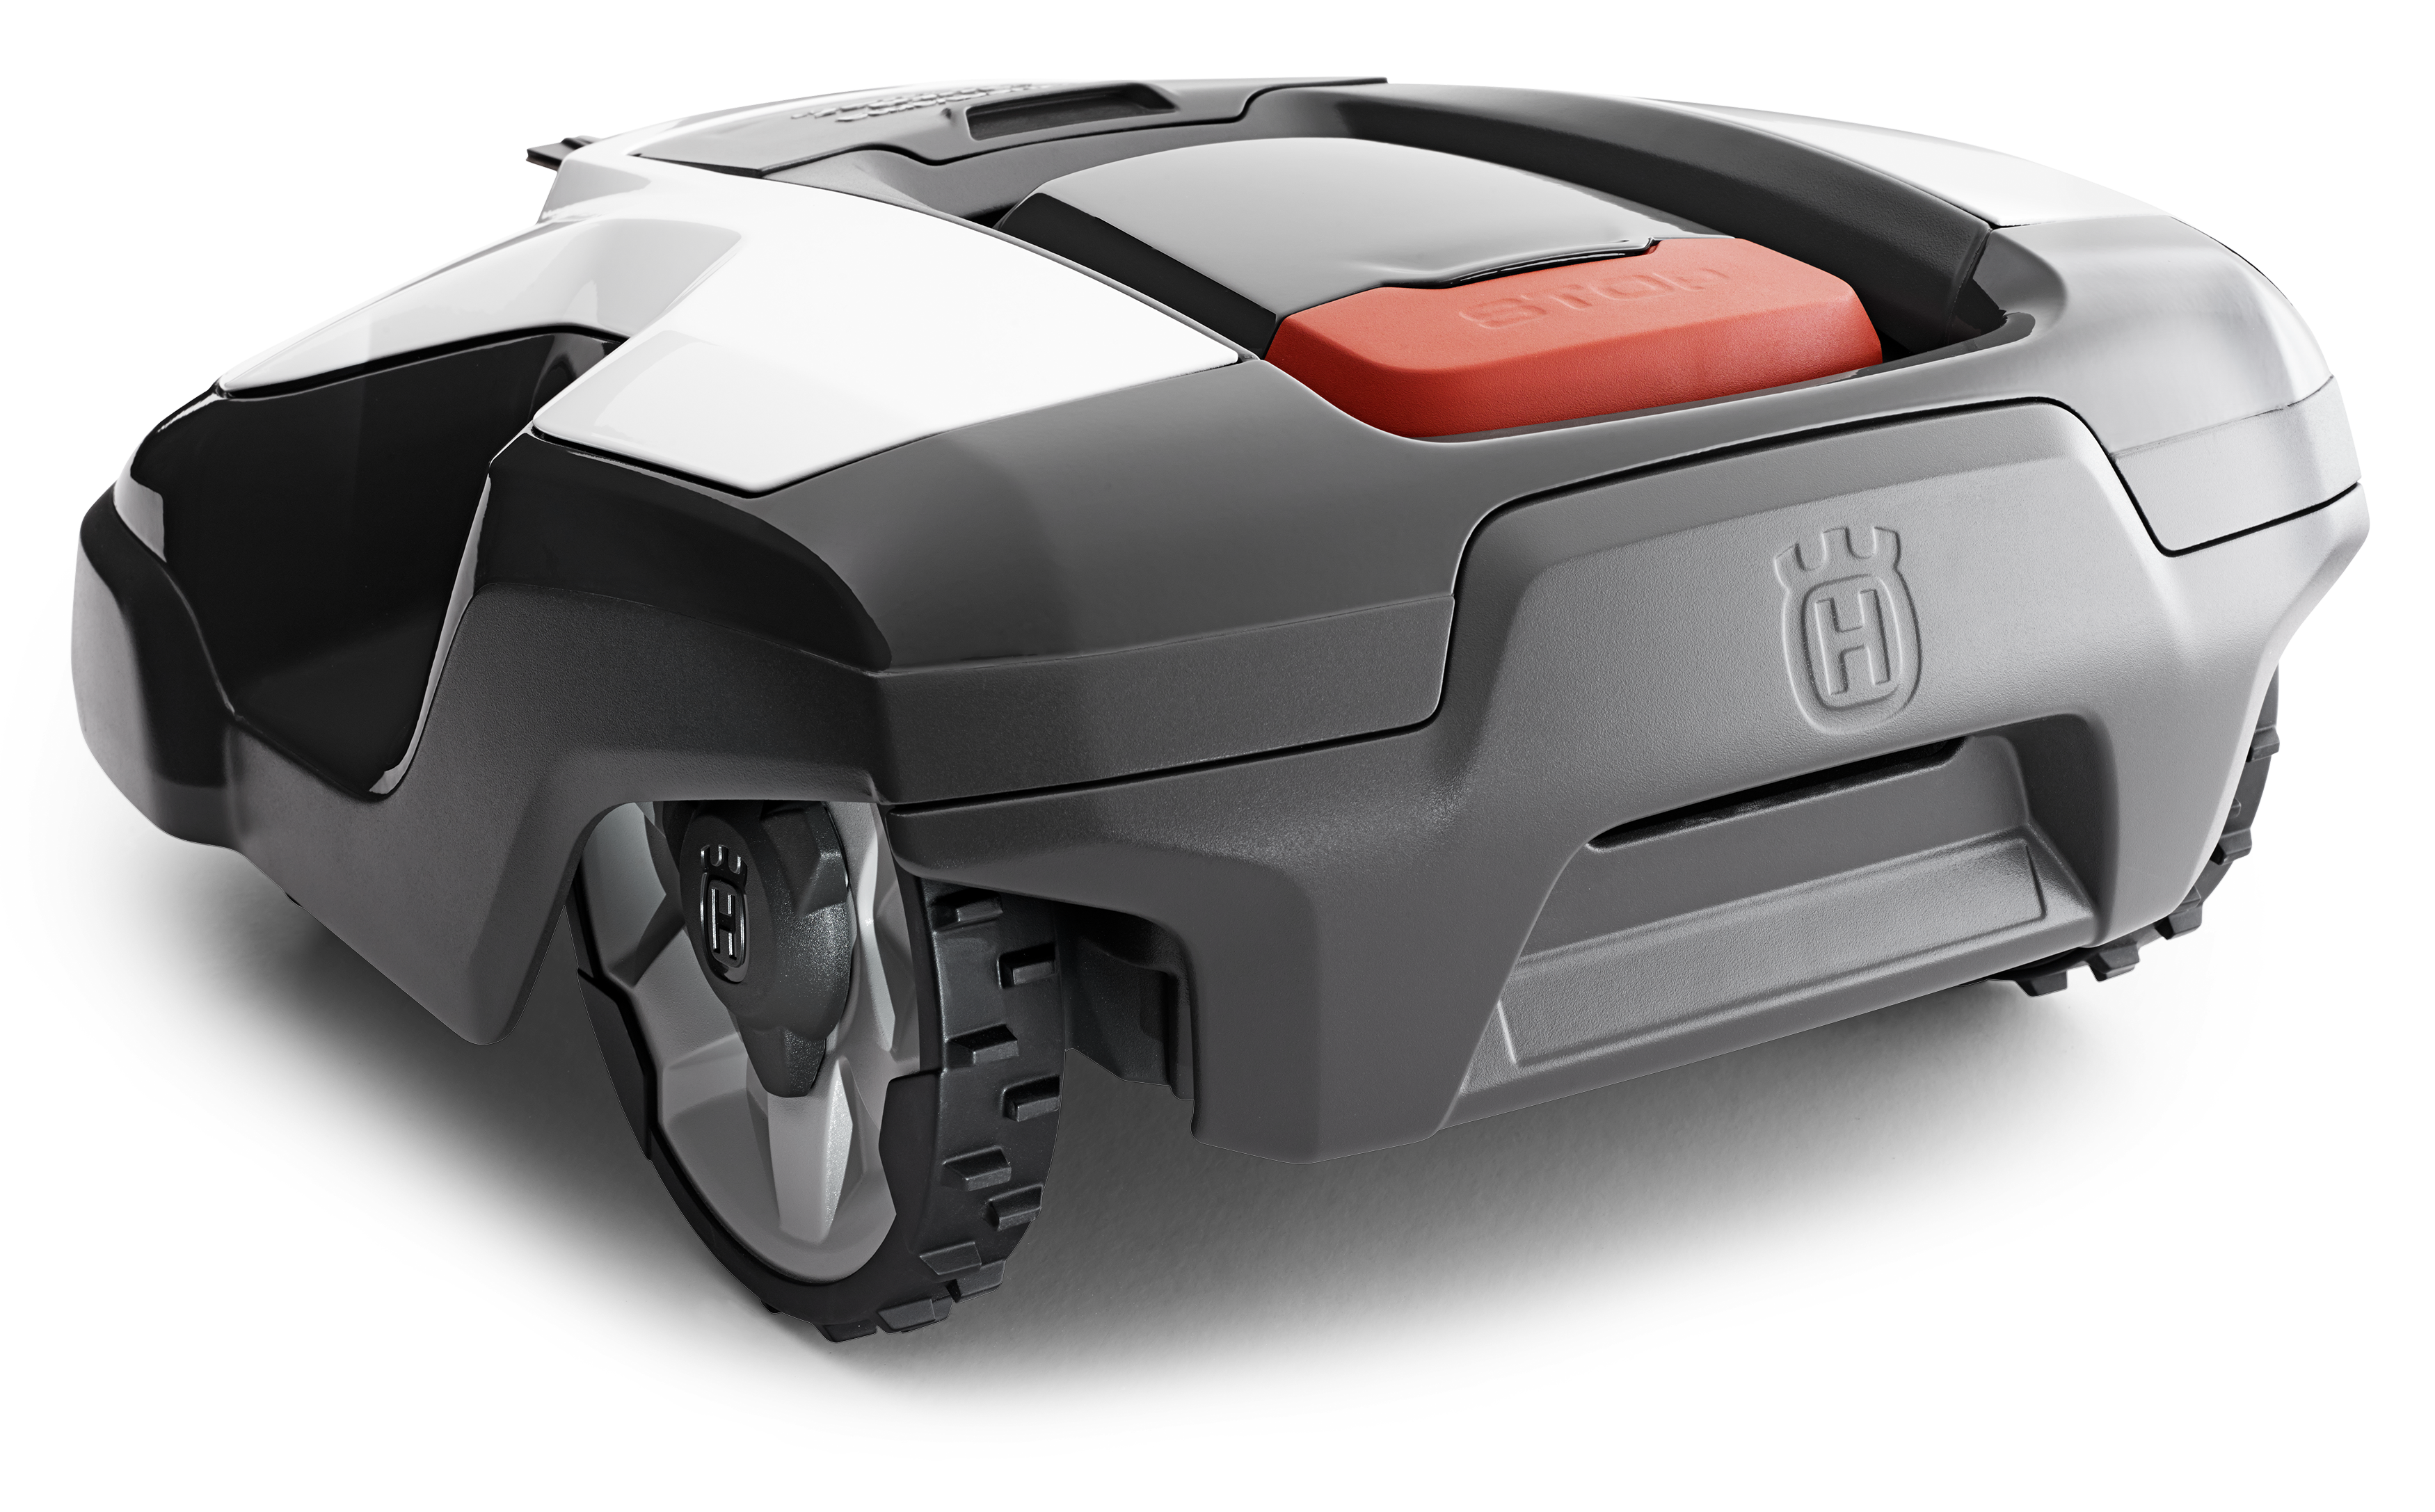 Melns Husqvarna zāles pļāvējs robots – Automower 315 modelis, skats no aizmugures kreisās puses